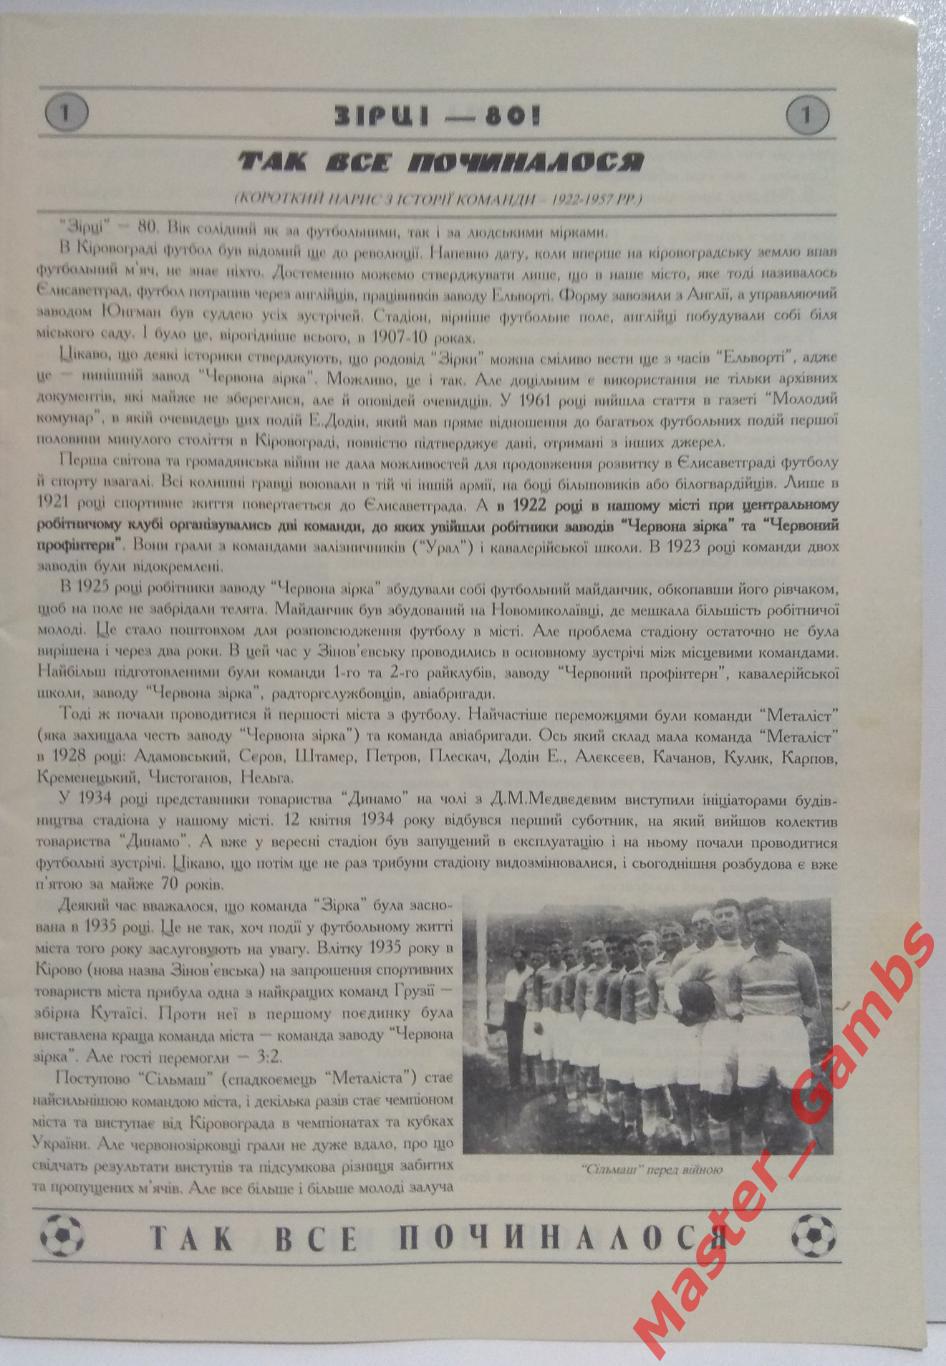 Перевозник, Ковалев - Звезда - 80 : 1922 - 2002 г.г. Юбилейное издание 2002* 1